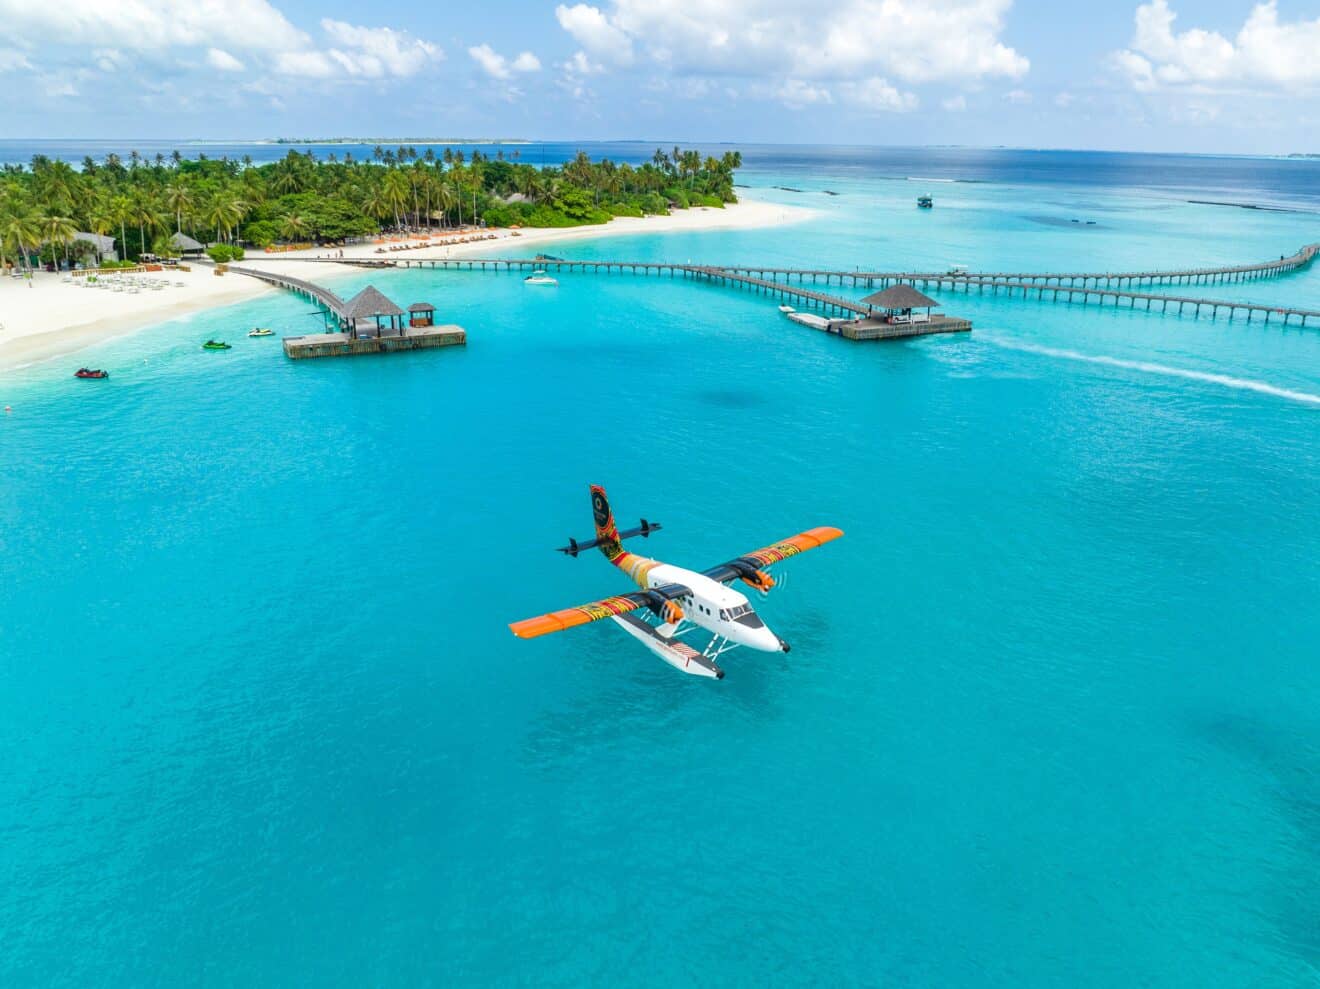 Vers le paradis en hydravion : Sun Siyam Iru Fushi aux Maldives vous offre le transfert en hydravion !